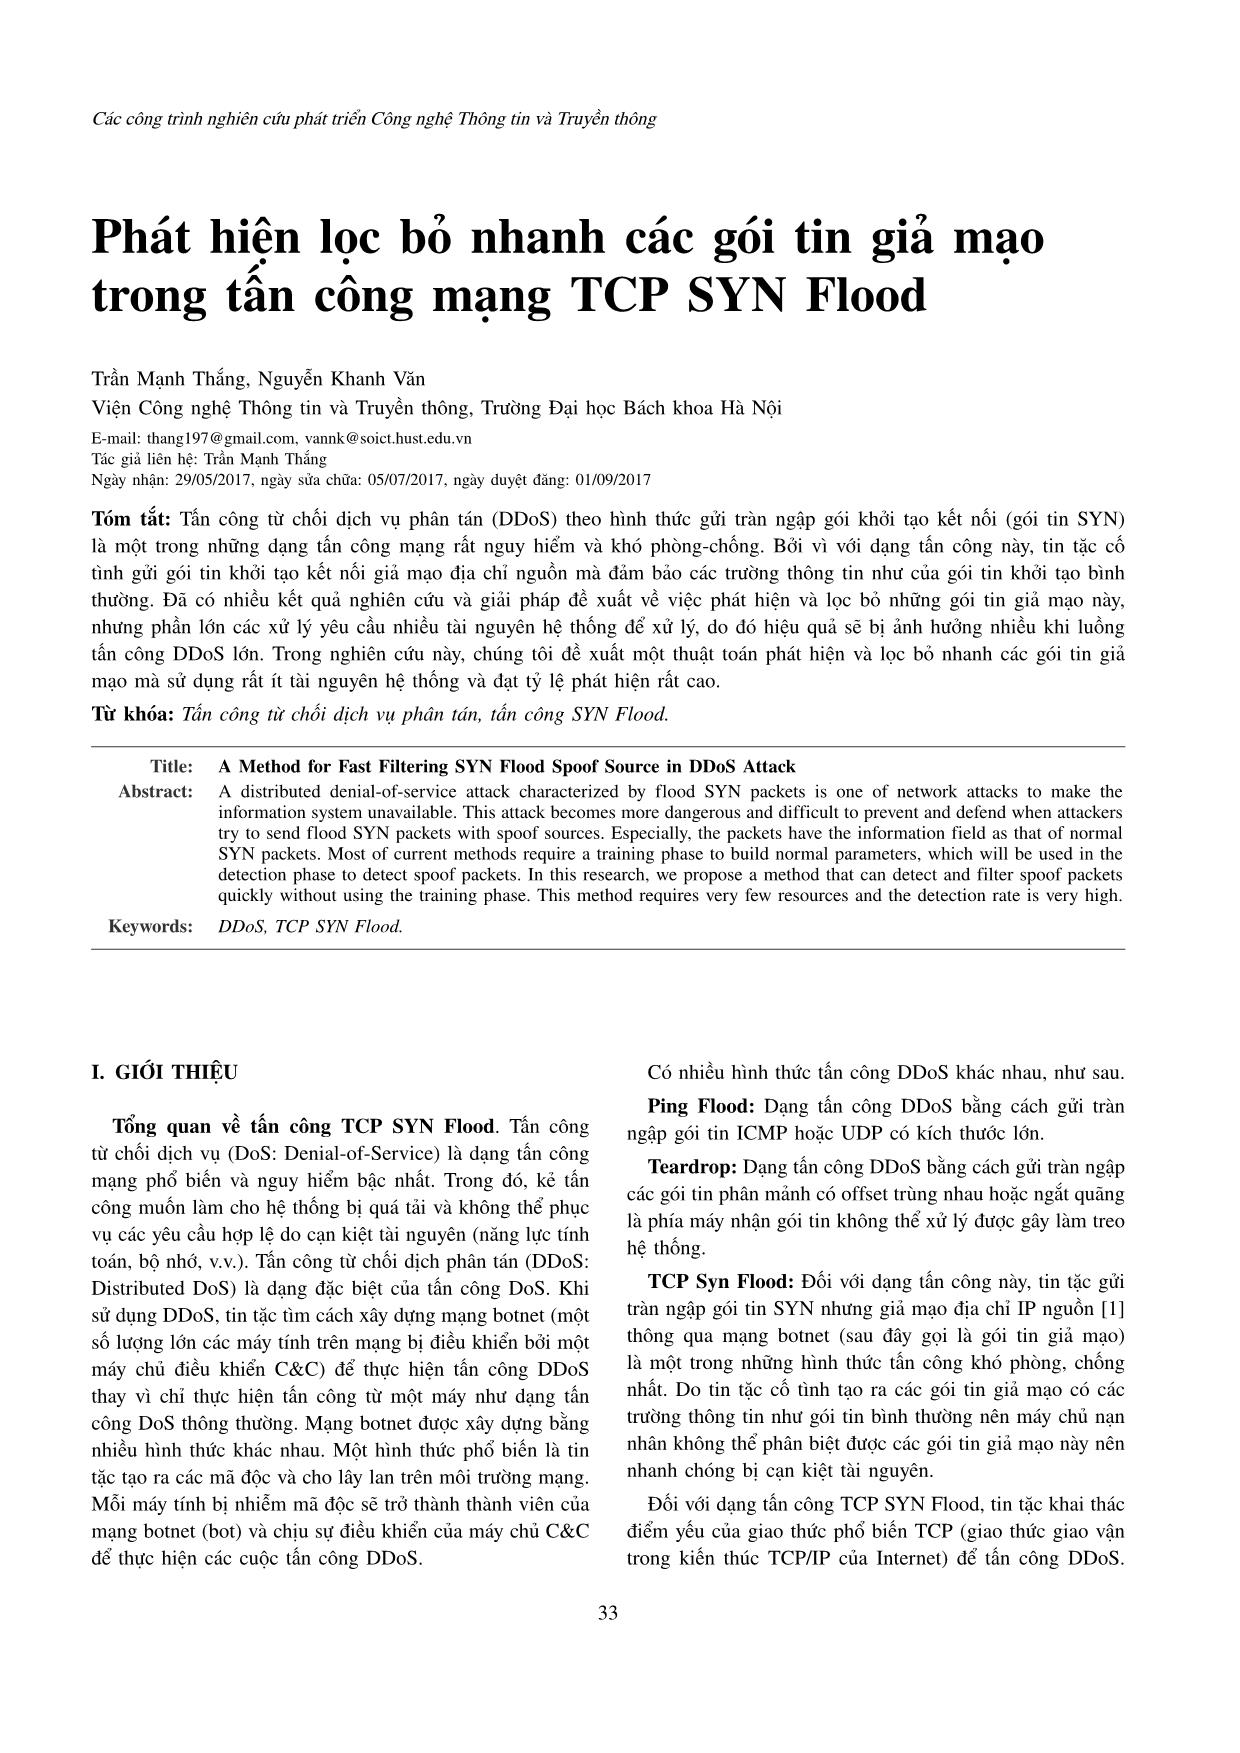 Phát hiện lọc bỏ nhanh các gói tin giả mạo trong tấn công mạng TCP SYN Flood trang 1